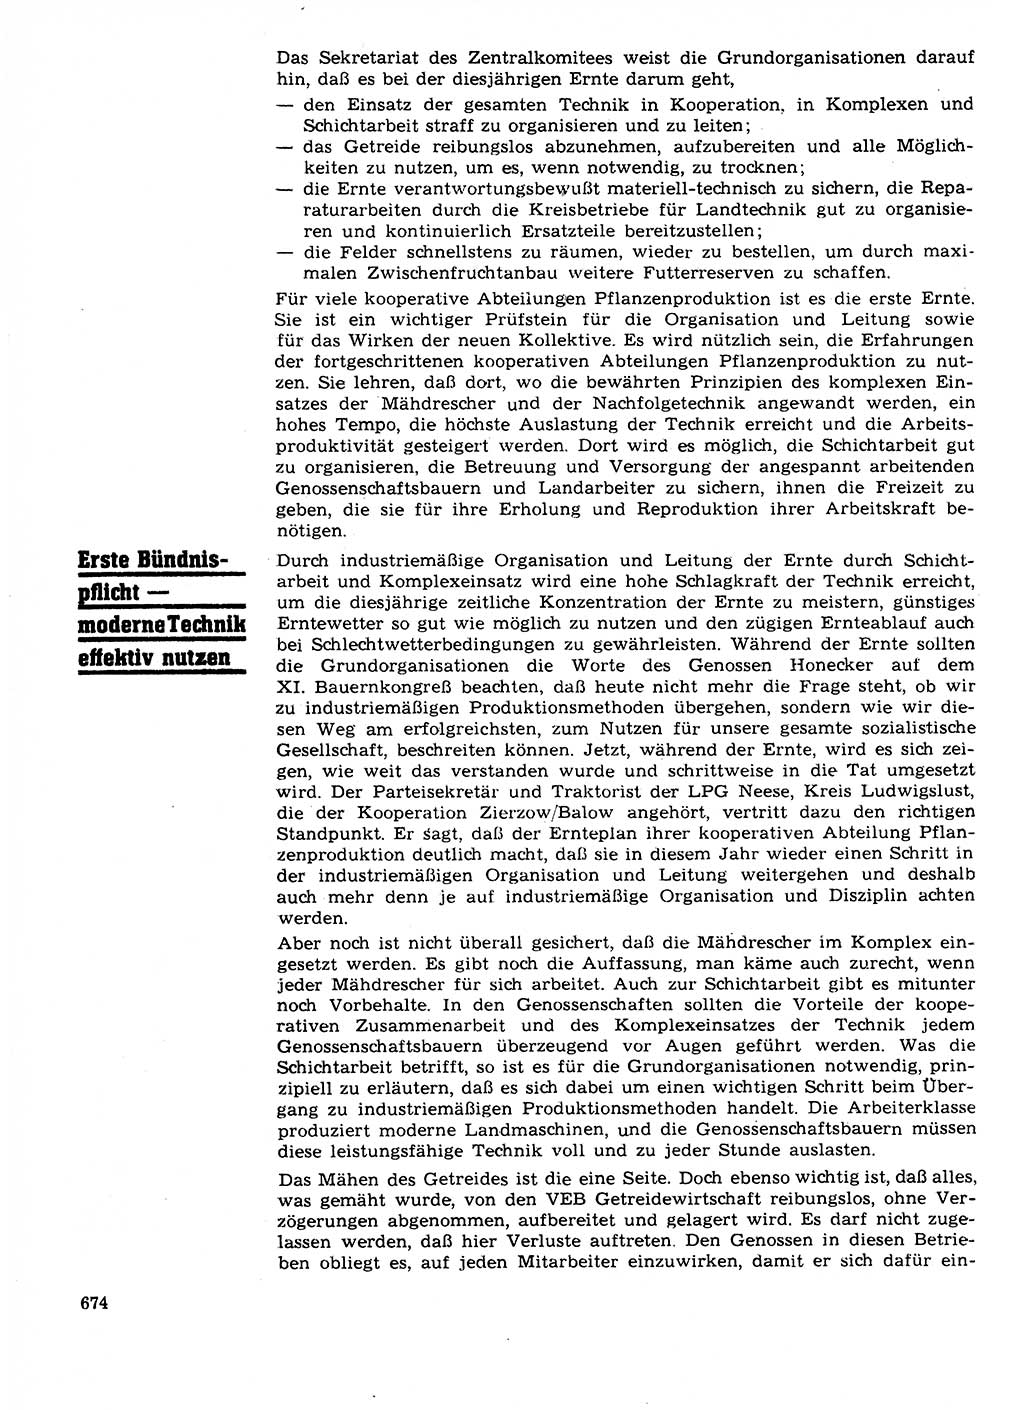 Neuer Weg (NW), Organ des Zentralkomitees (ZK) der SED (Sozialistische Einheitspartei Deutschlands) für Fragen des Parteilebens, 27. Jahrgang [Deutsche Demokratische Republik (DDR)] 1972, Seite 674 (NW ZK SED DDR 1972, S. 674)